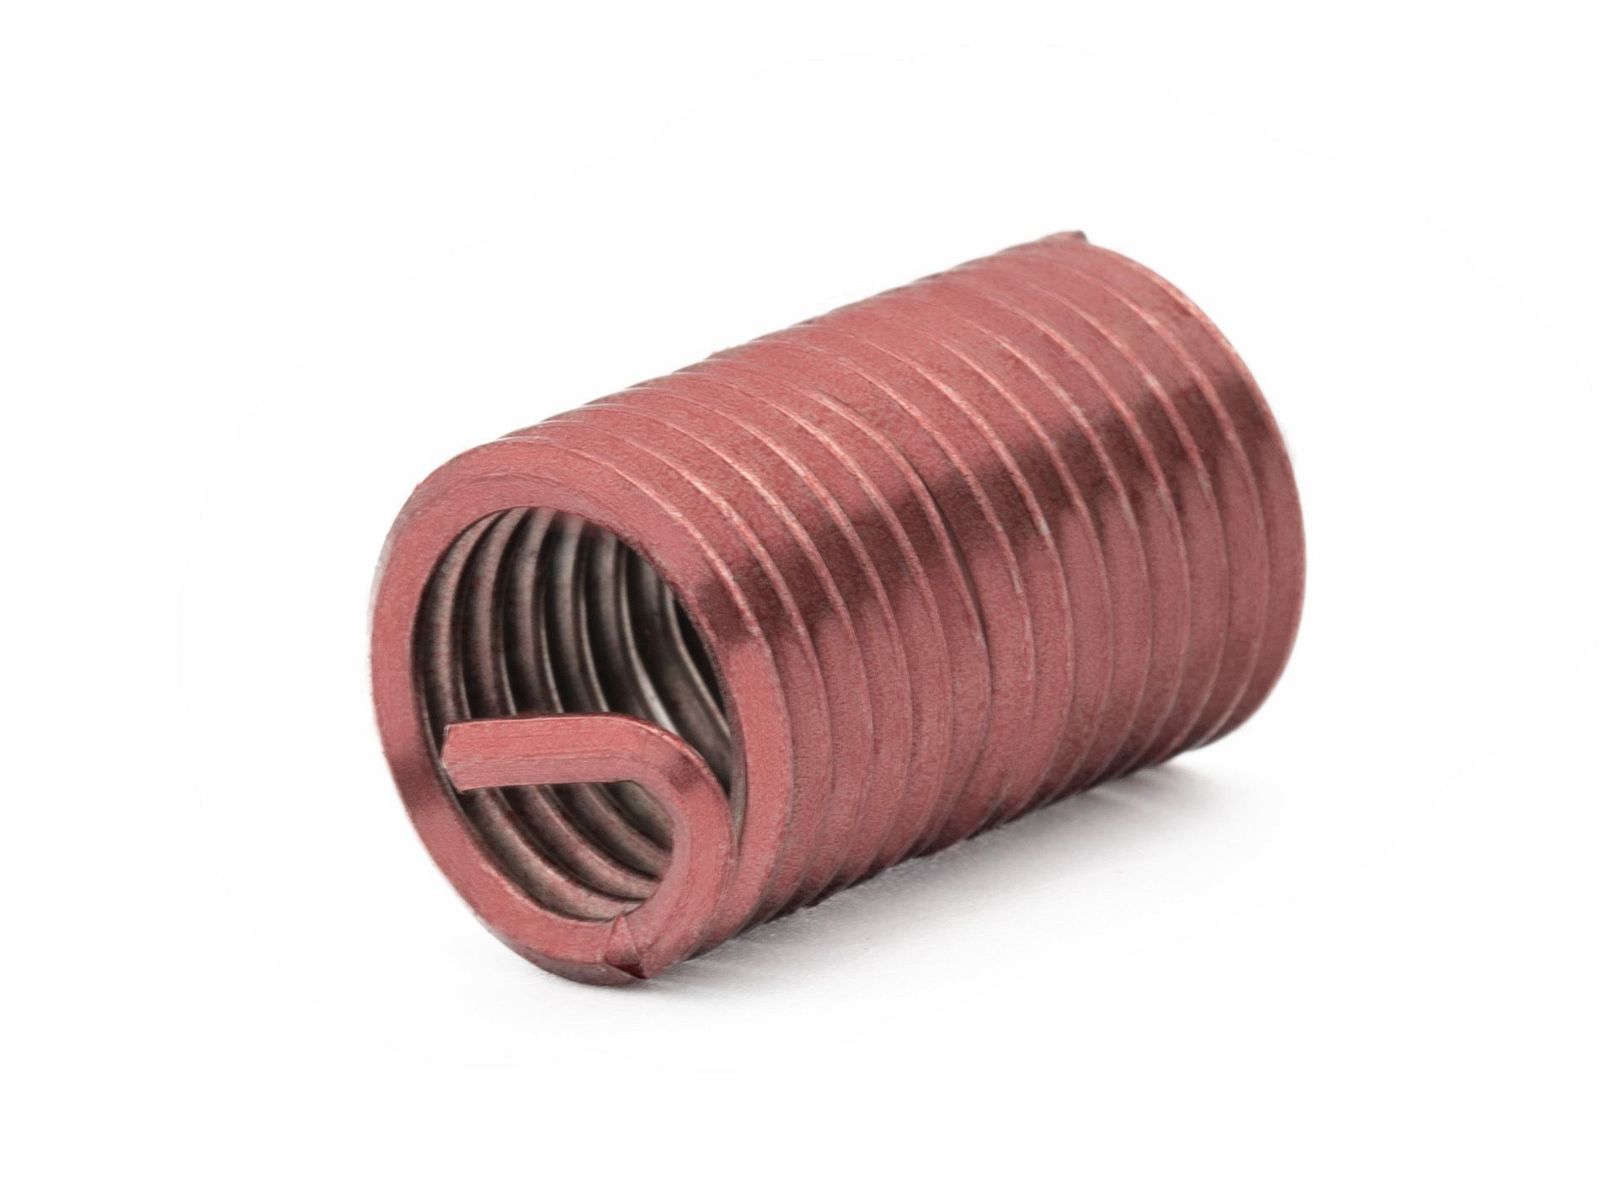 BaerCoil Wire Thread Inserts UNF 3/8 x 24 - 2.5 D (23.81 mm) - screw grip (screw locking) - 100 pcs.